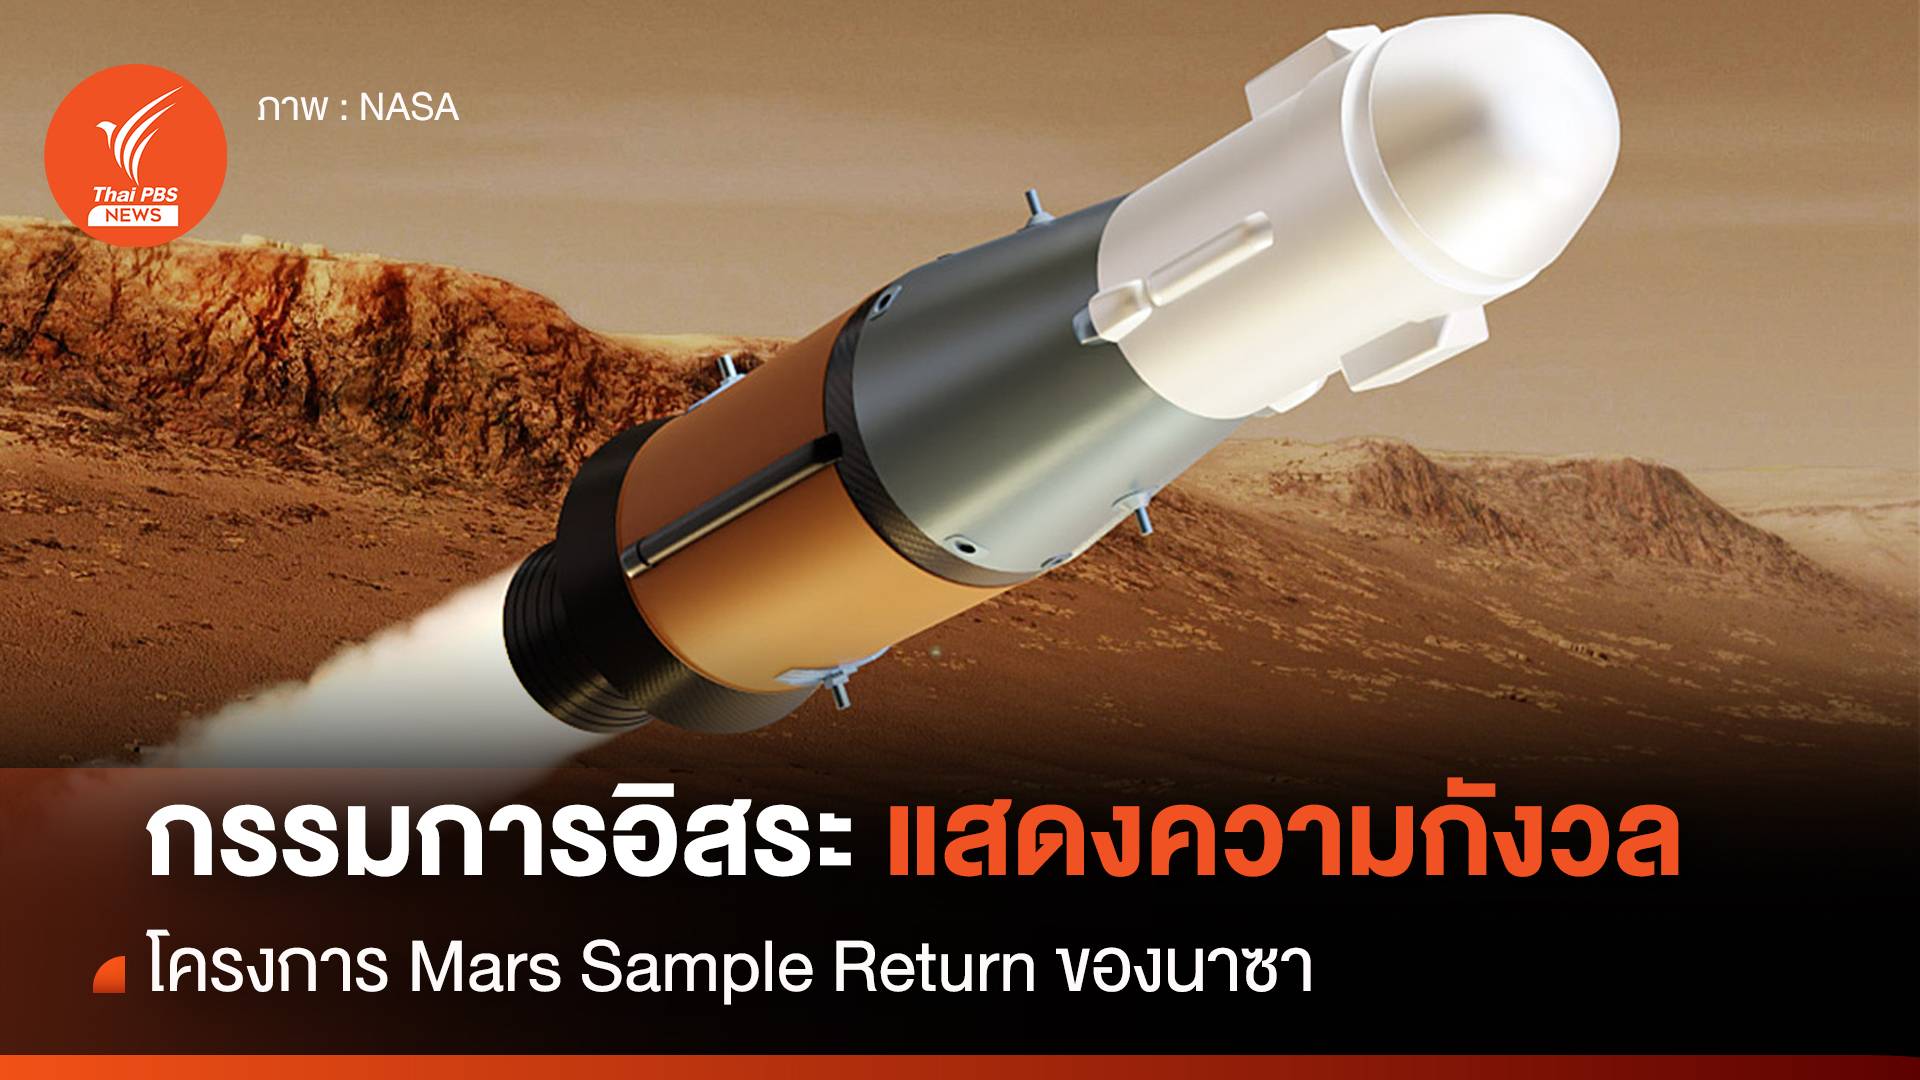 "คณะกรรมการอิสระนาซา" ปล่อยรายงานแสดงความกังวลต่อโครงการ Mars Sample Return